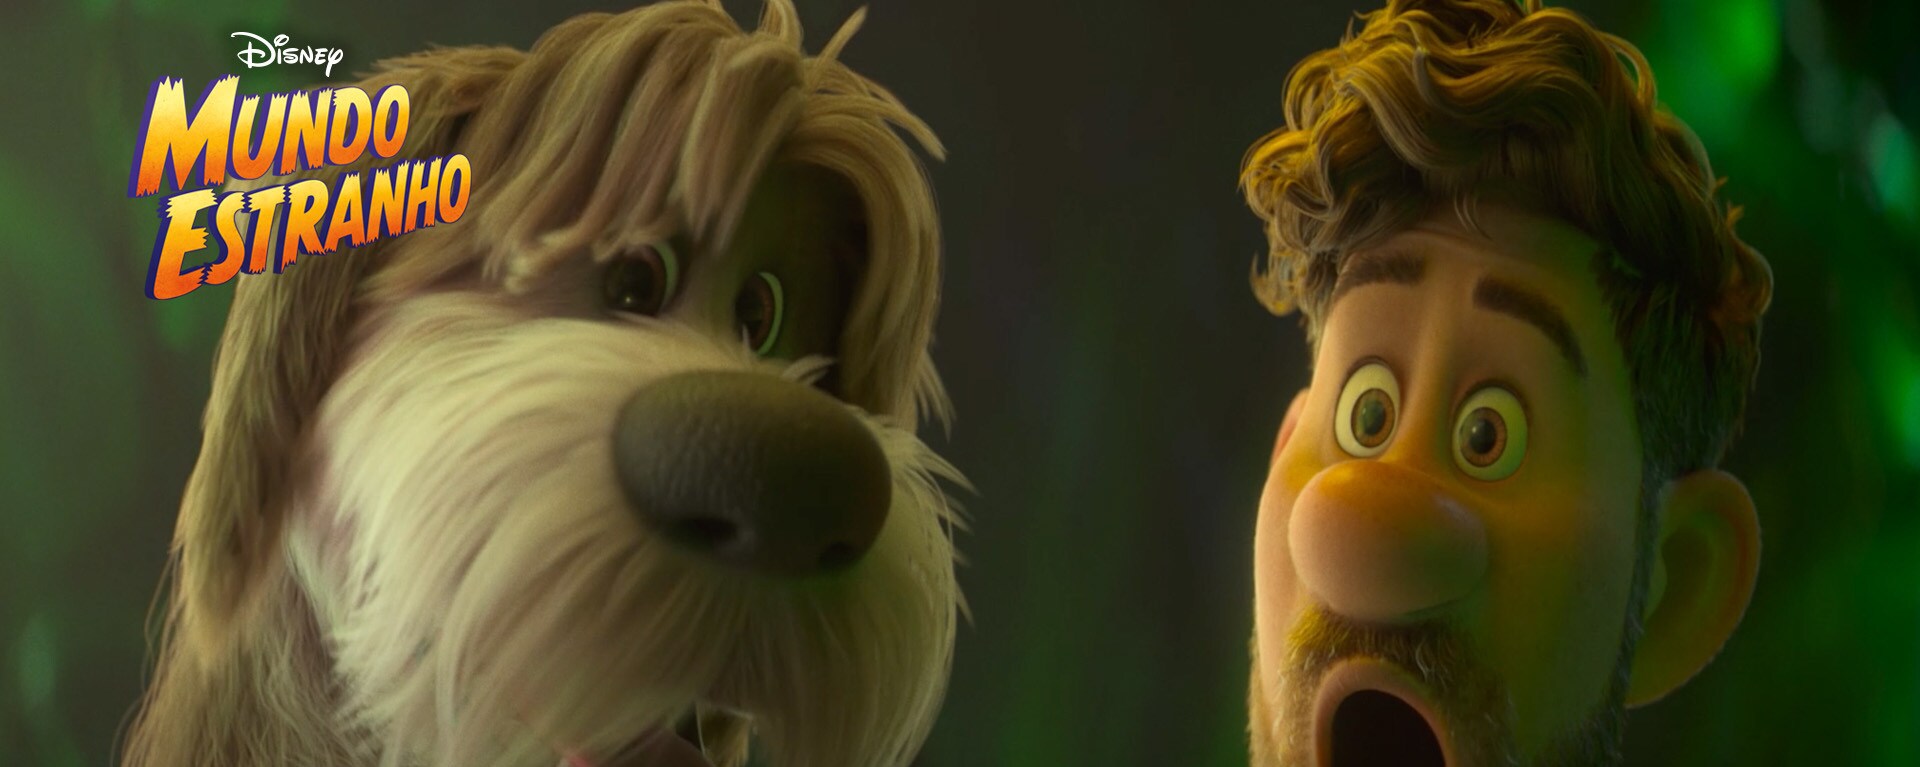 Mundo Estranho': conheça os personagens do novo filme da Disney